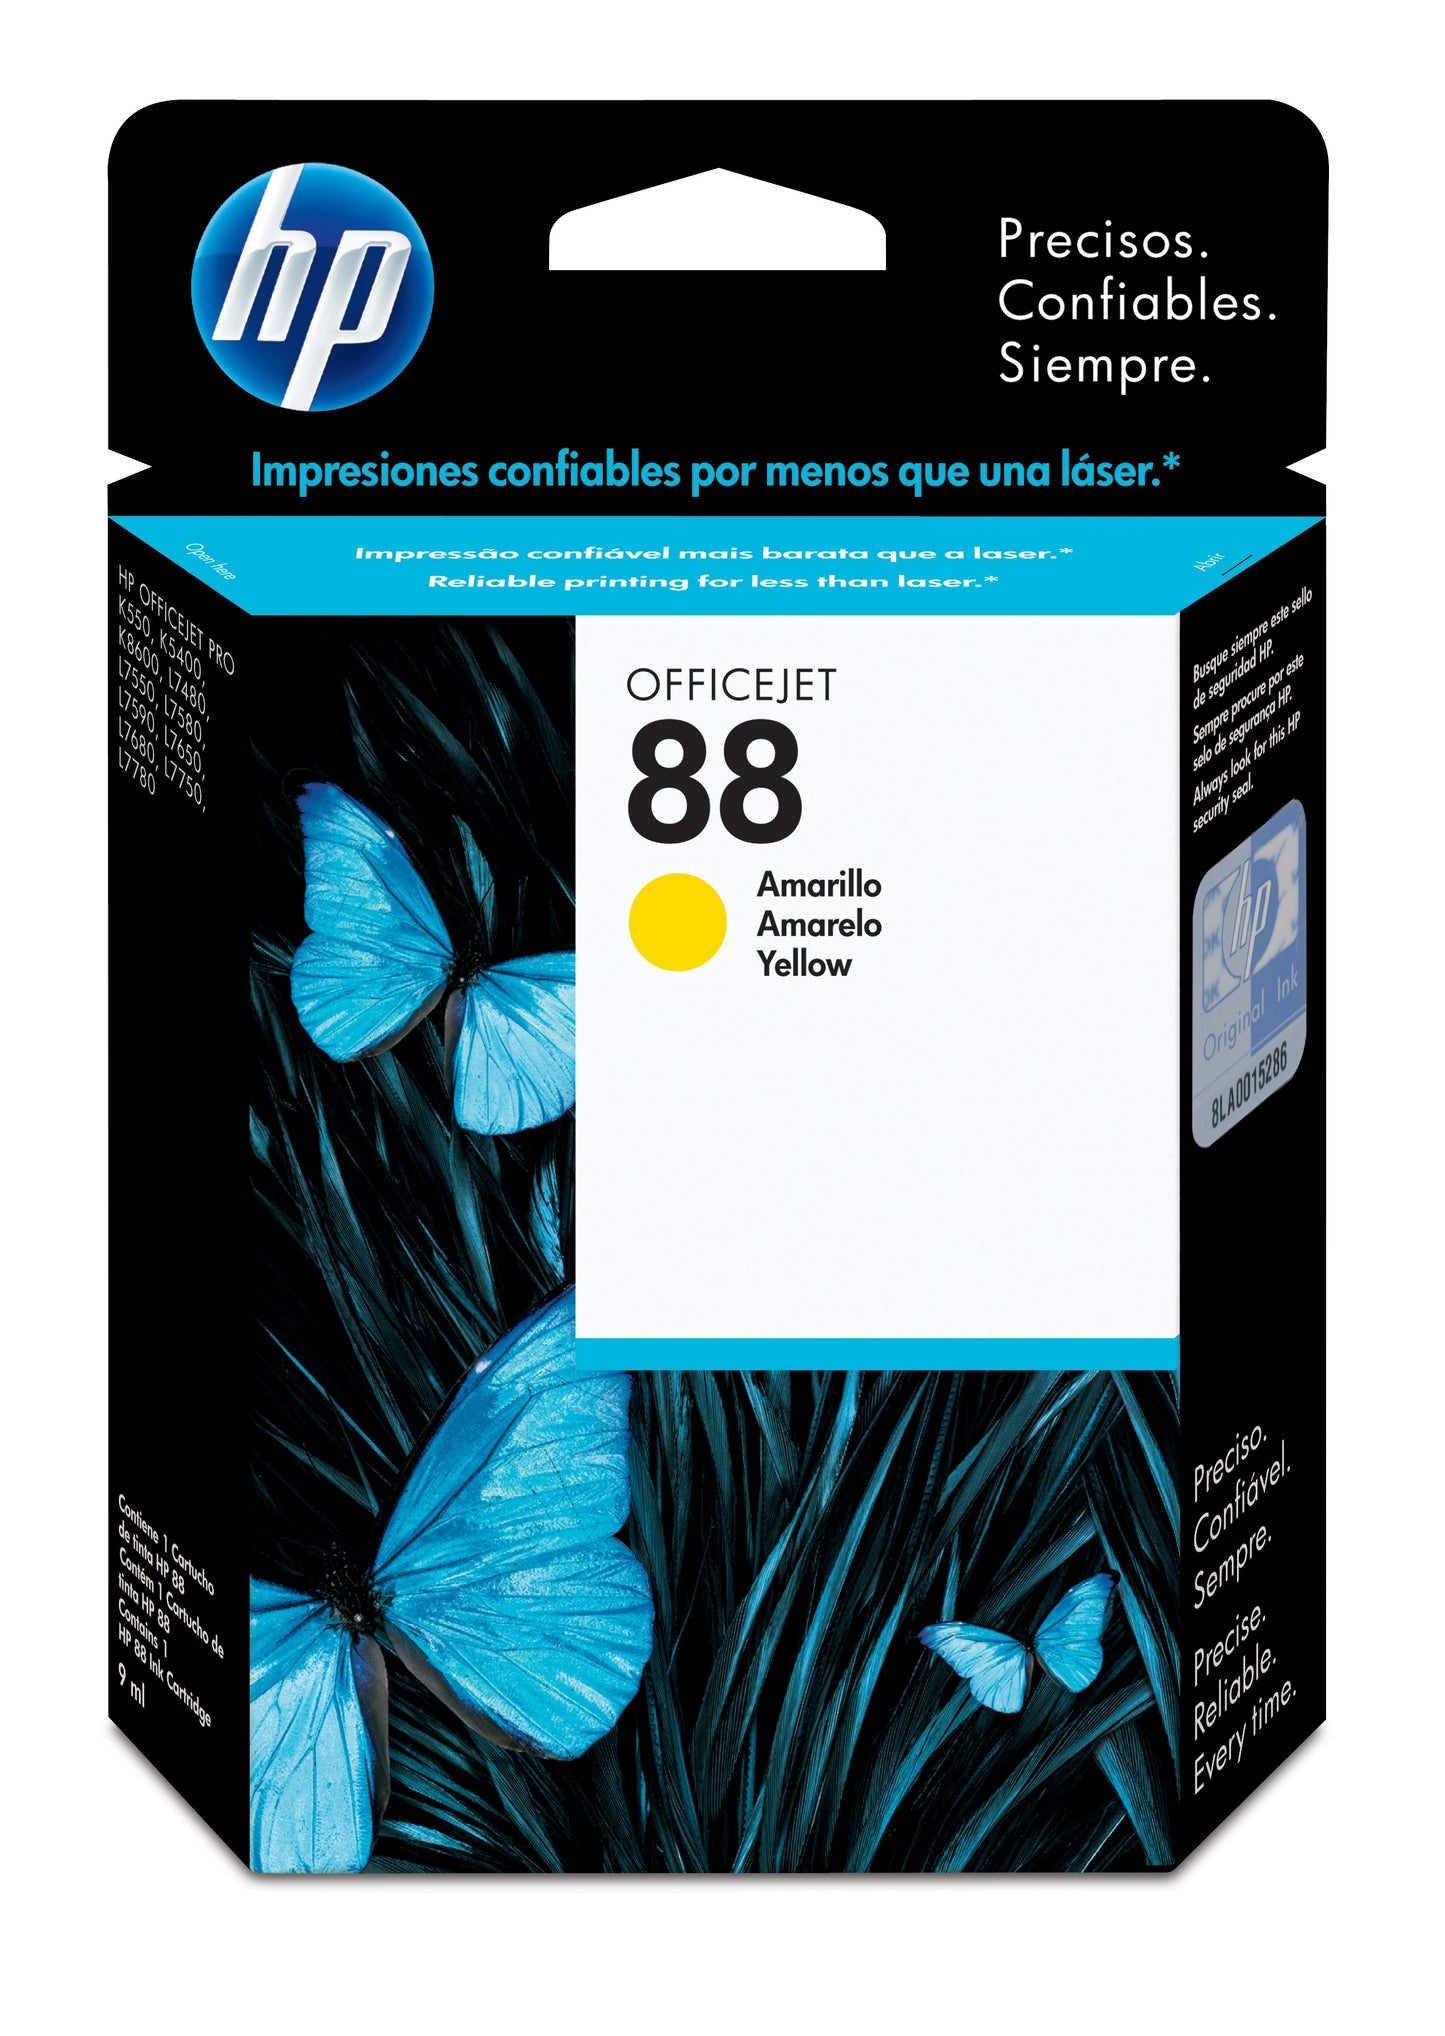 C9388AL Cartucho de tinta HP 88 Amarillo Original - Fecha de empaque 2017